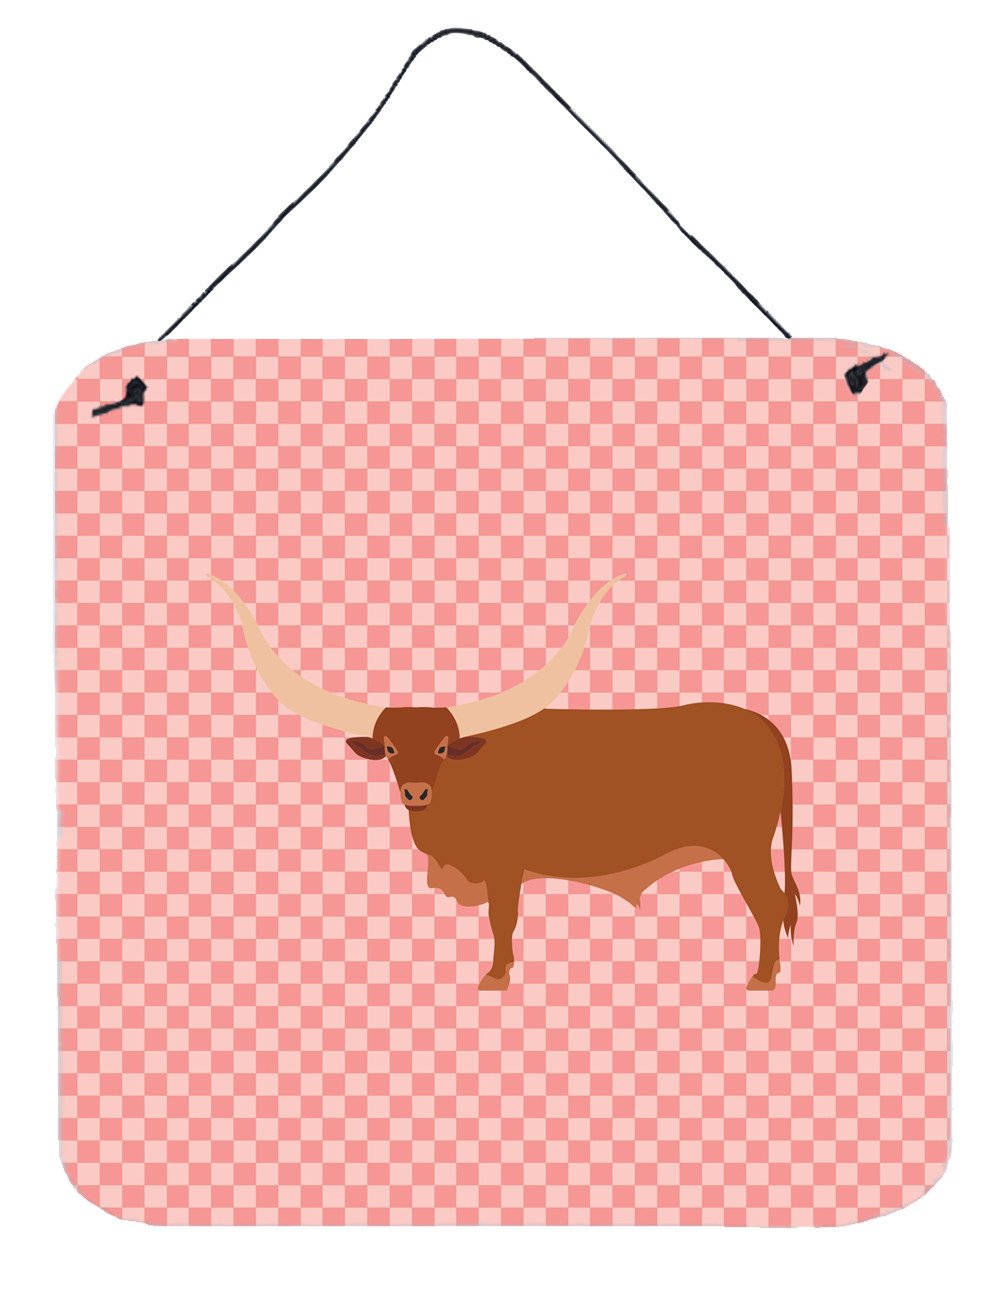 Ankole-Watusu Cow Pink Check Wall or Door Hanging Prints BB7823DS66 by Caroline&#39;s Treasures